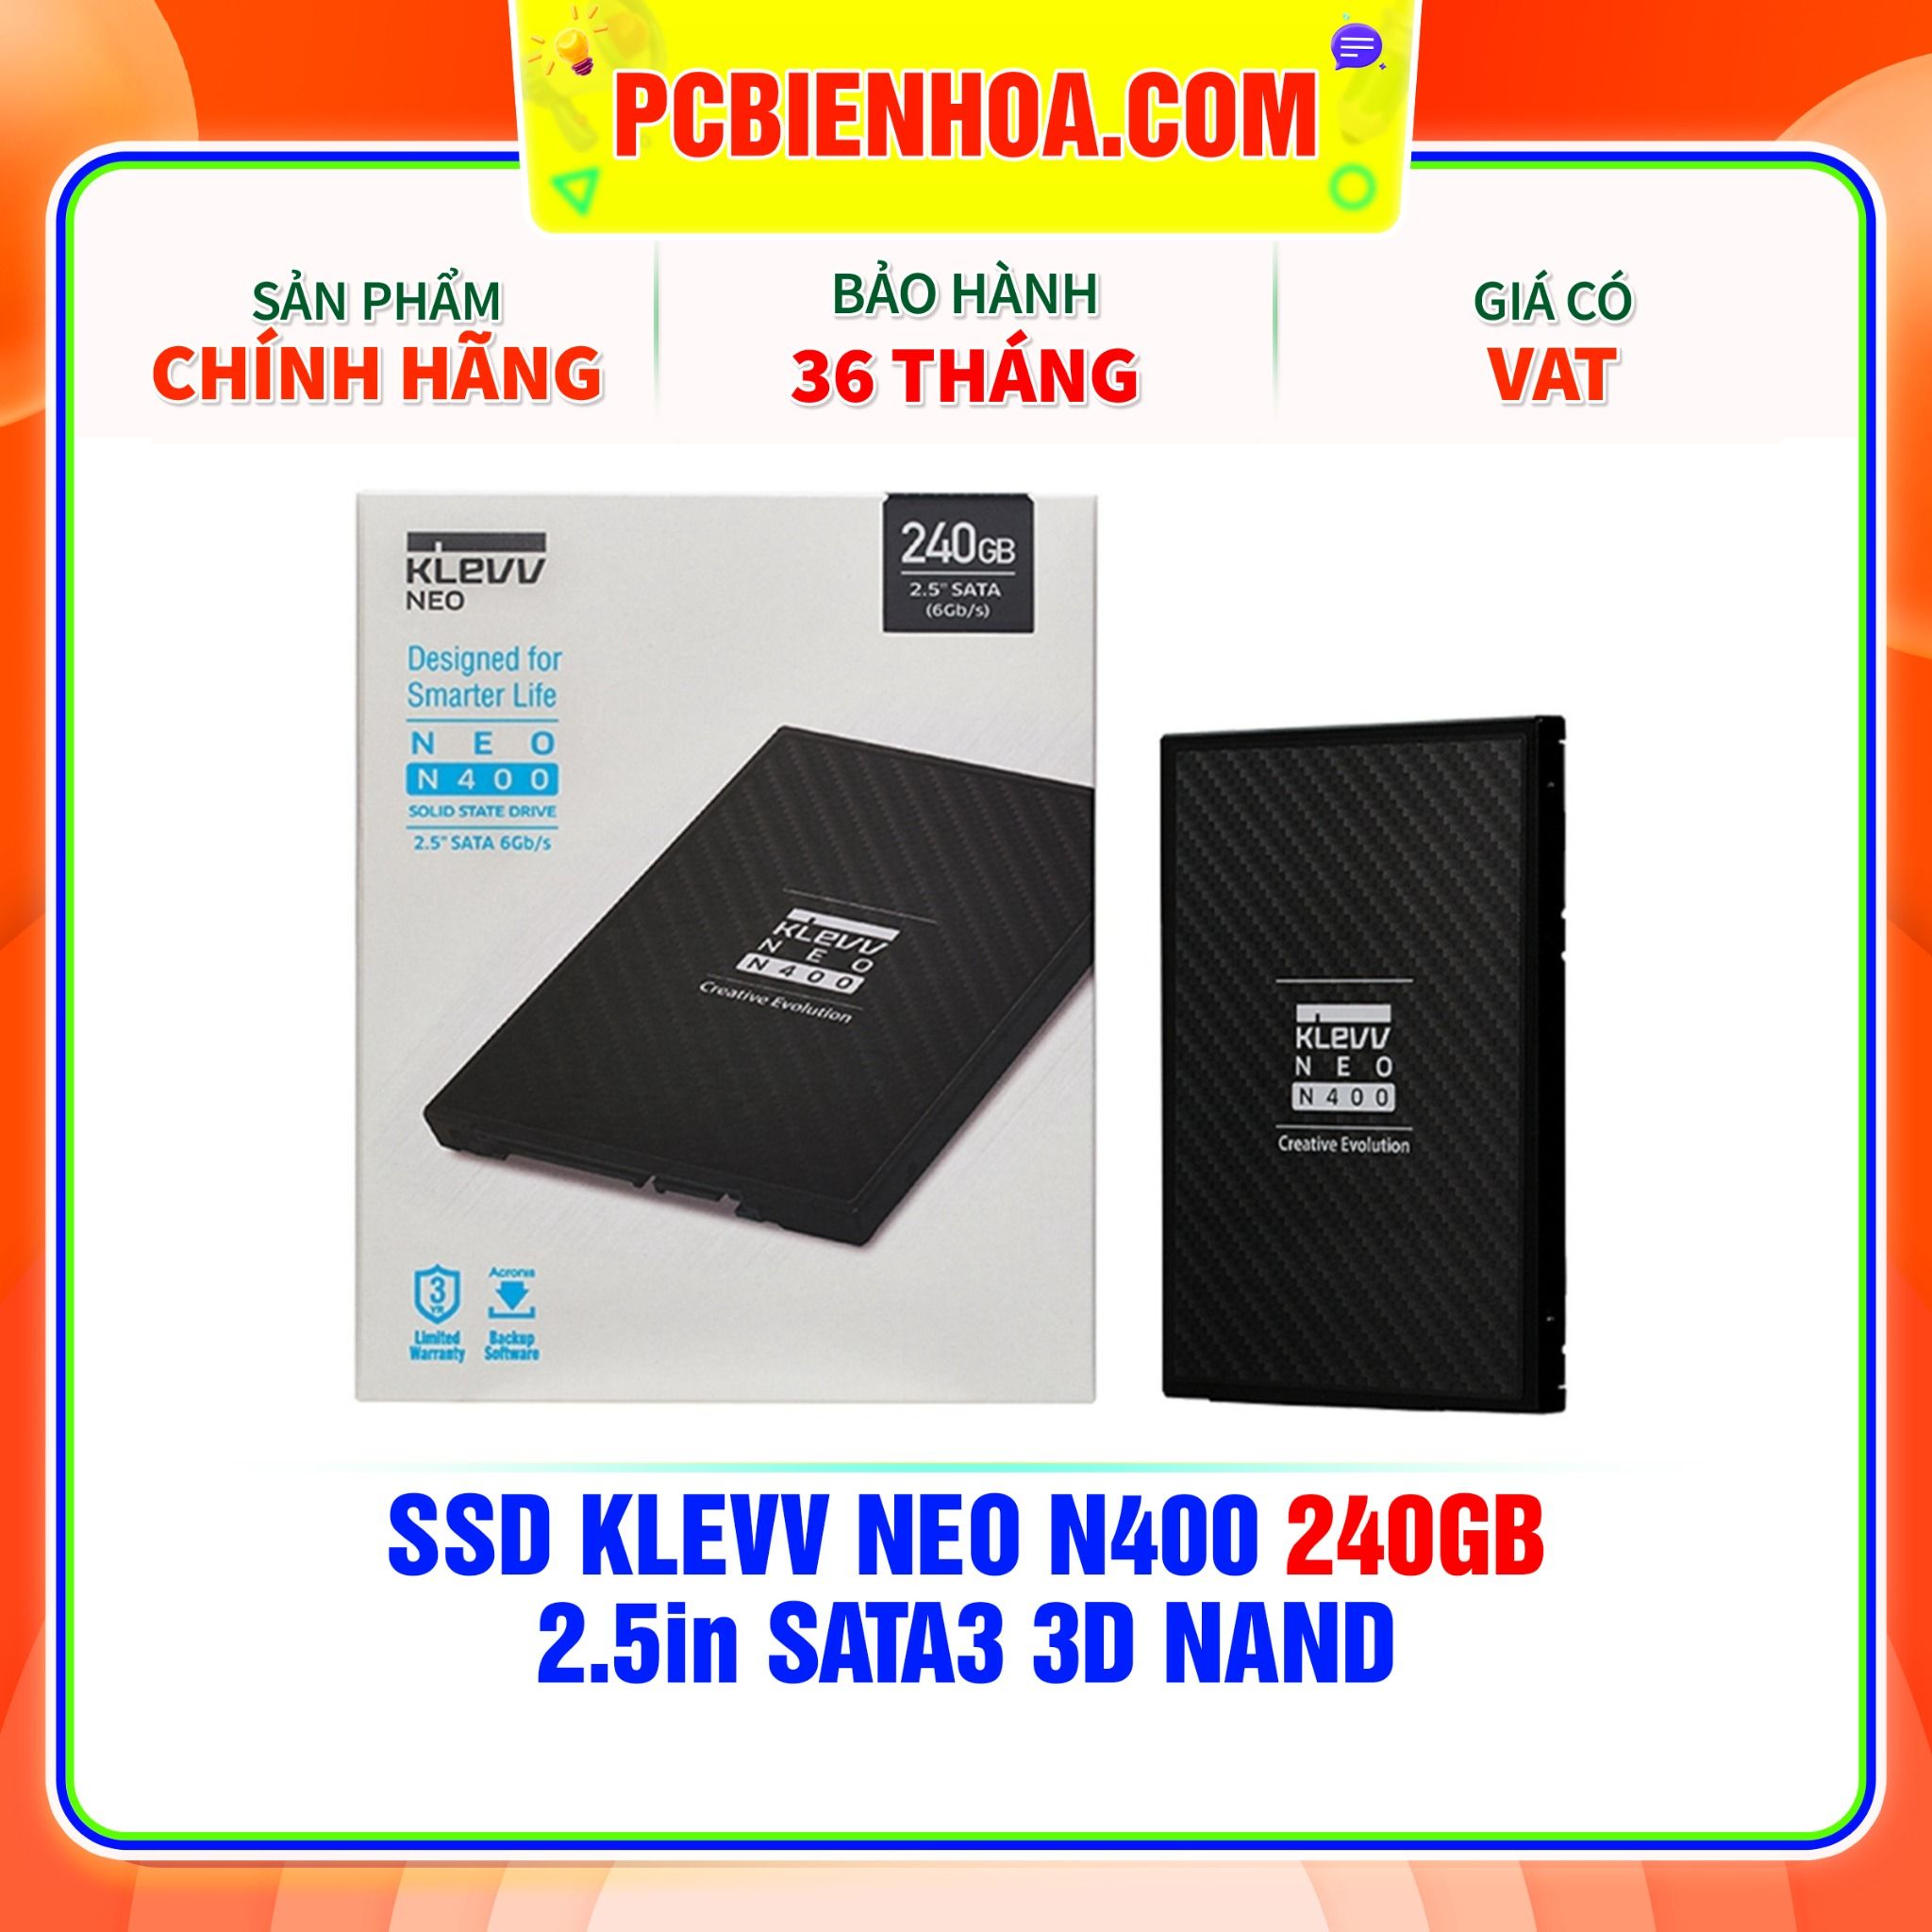  SSD KLEVV NEO N400 240GB 2.5in SATA3 3D NAND 